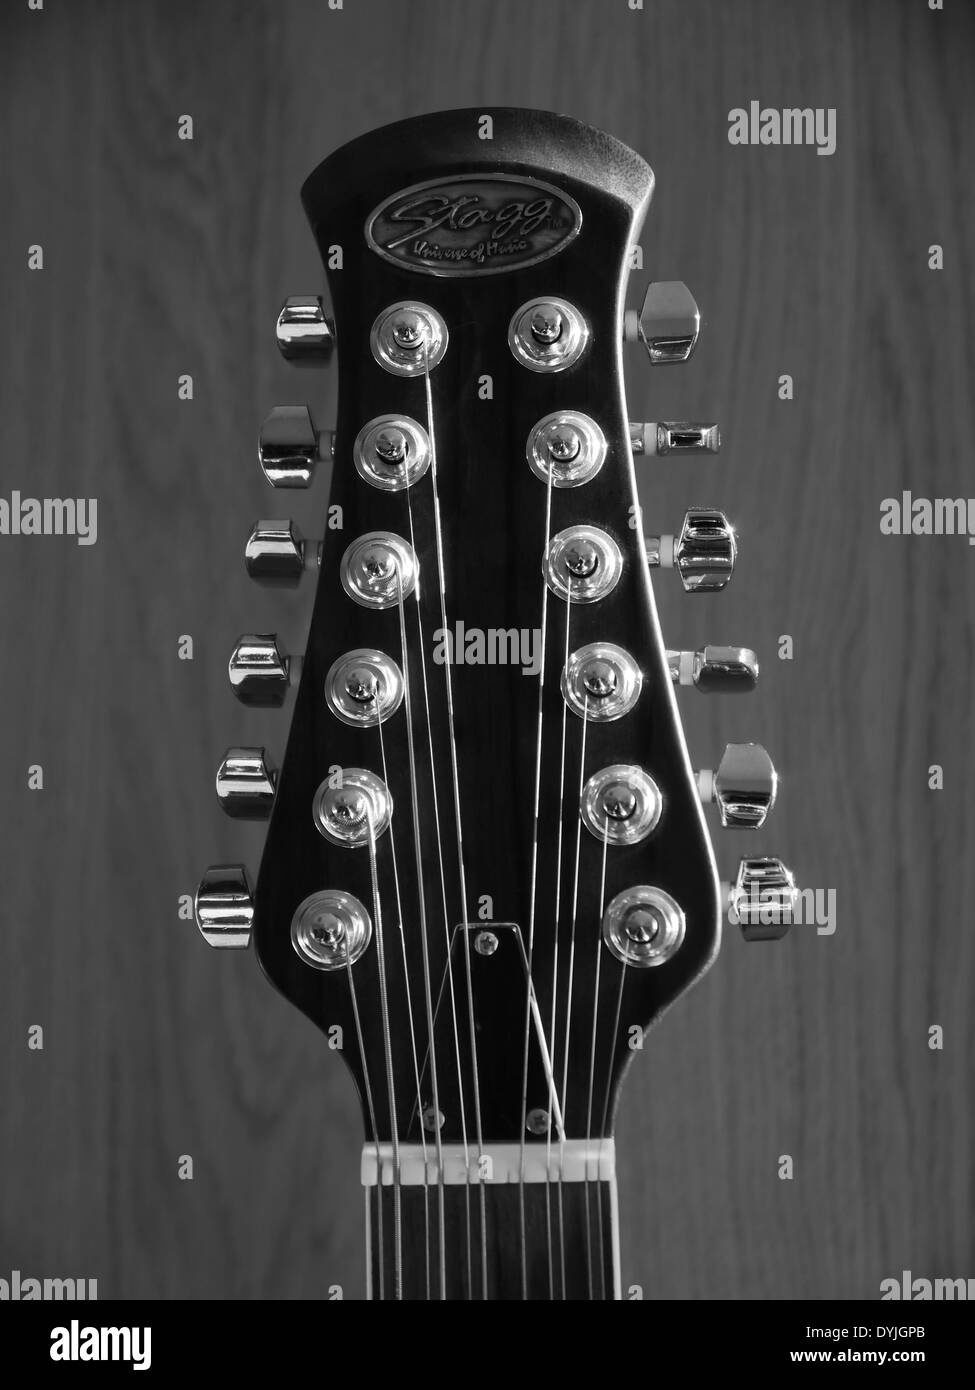 Testa-stock di stringa 12 Stagg elettro/chitarra acustica che mostra chrome piroli, stringhe e dado - Vista frontale - monocromatico Foto Stock